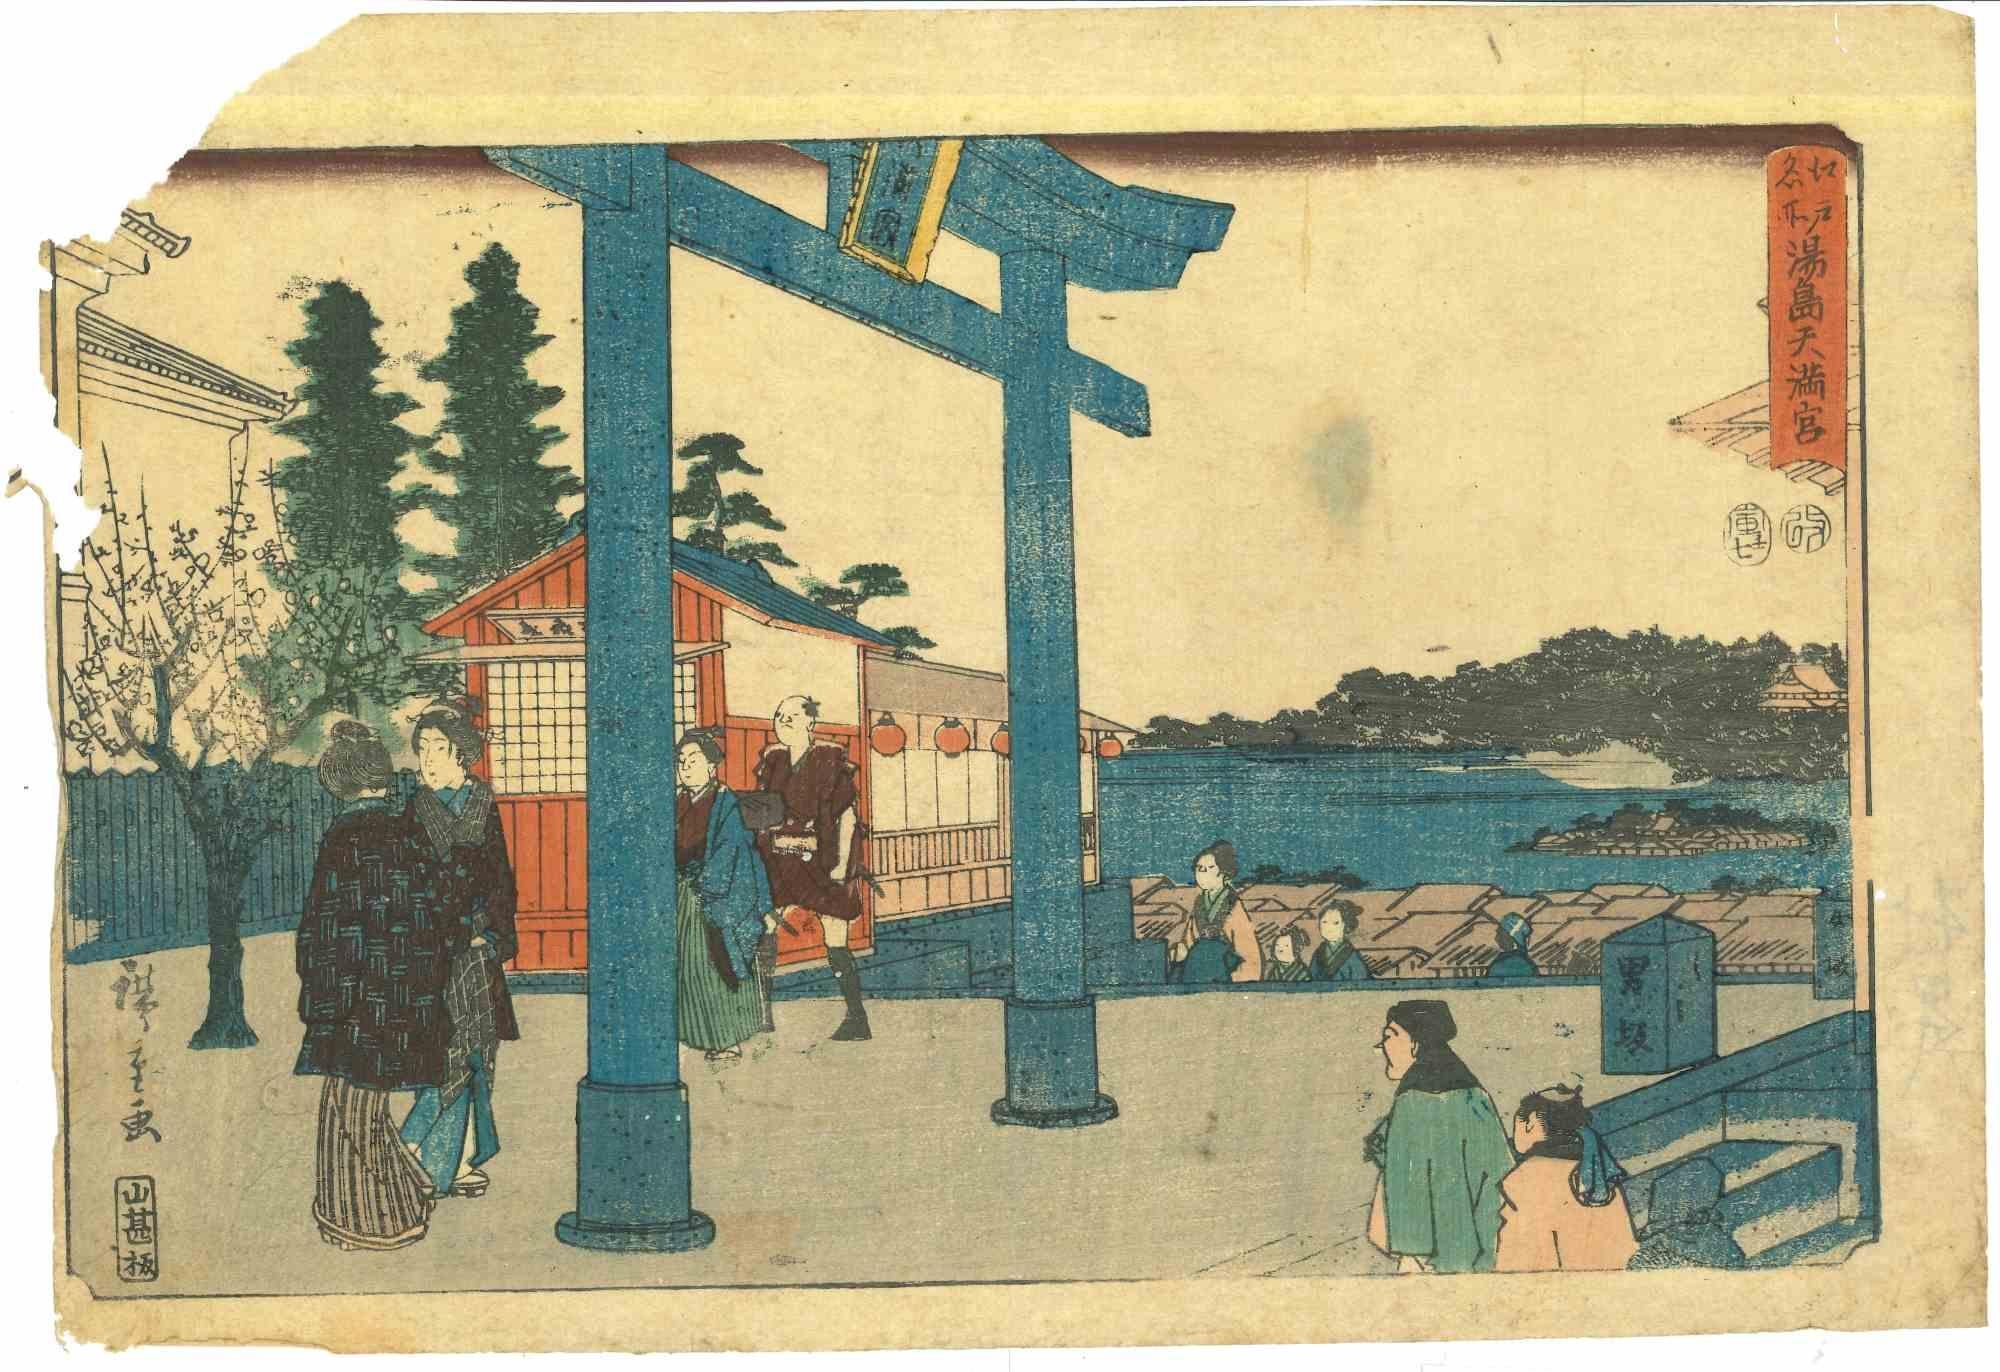 Japanese Woodcut Print - Original Woodcut Print by Utagawa Hiroshige - 19th Cent